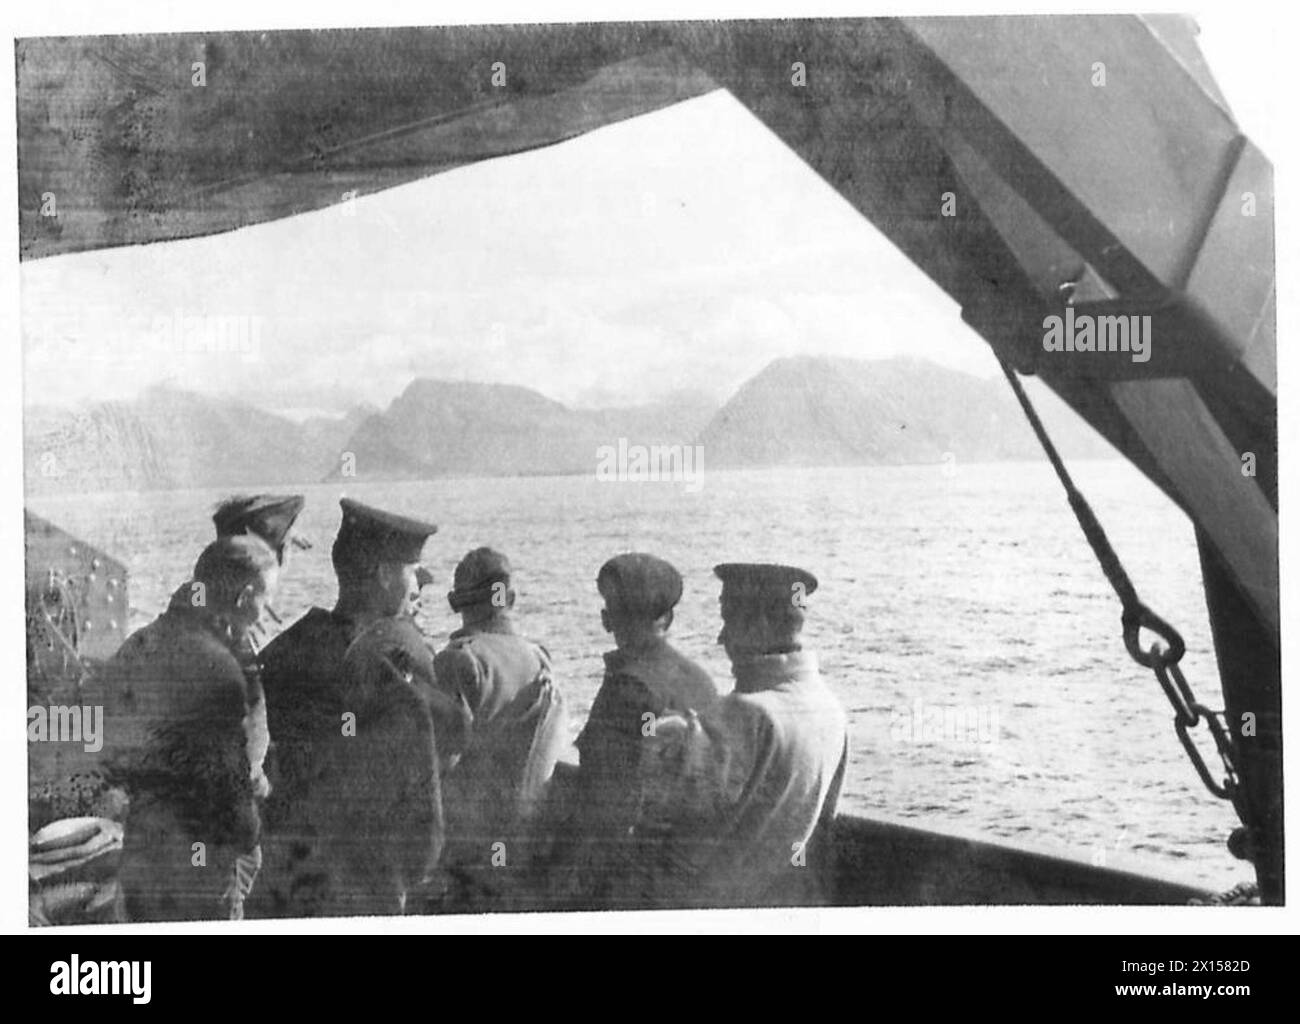 BRITISCHE UND KANADISCHE TRUPPEN IN ISLAND - typische isländische Landschaft von einem Schiff aus gesehen, das die britische Armee an der Nordwestküste umfährt Stockfoto